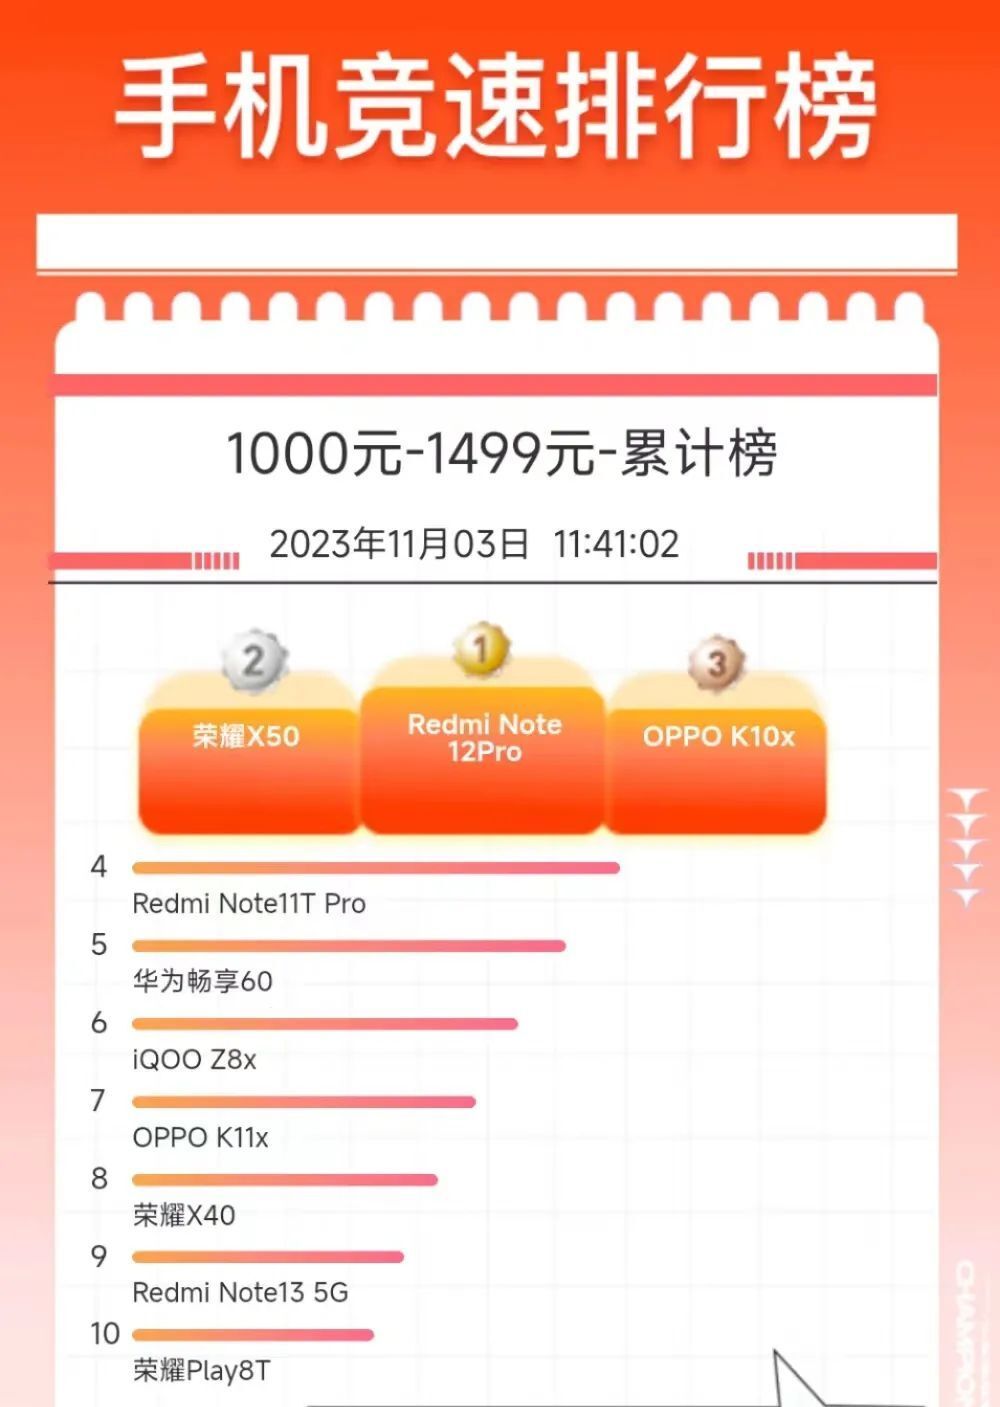 人气排行手机_最新热门手机排行榜:小米14Pro连续4周霸榜创纪录!